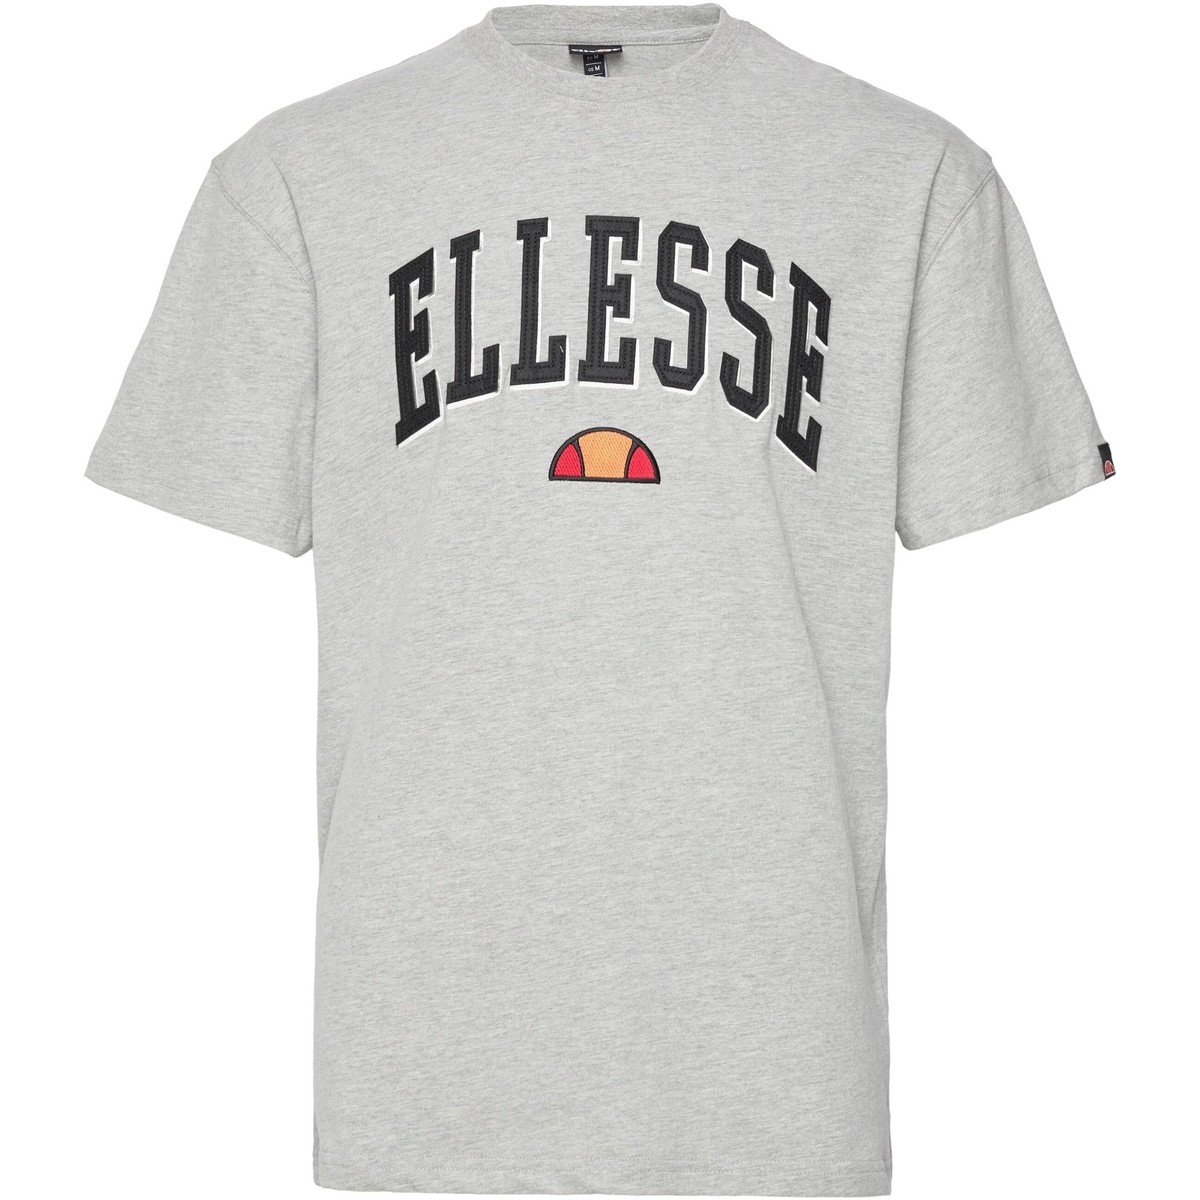 tekstylia Męskie T-shirty z krótkim rękawem Ellesse 199496 Szary